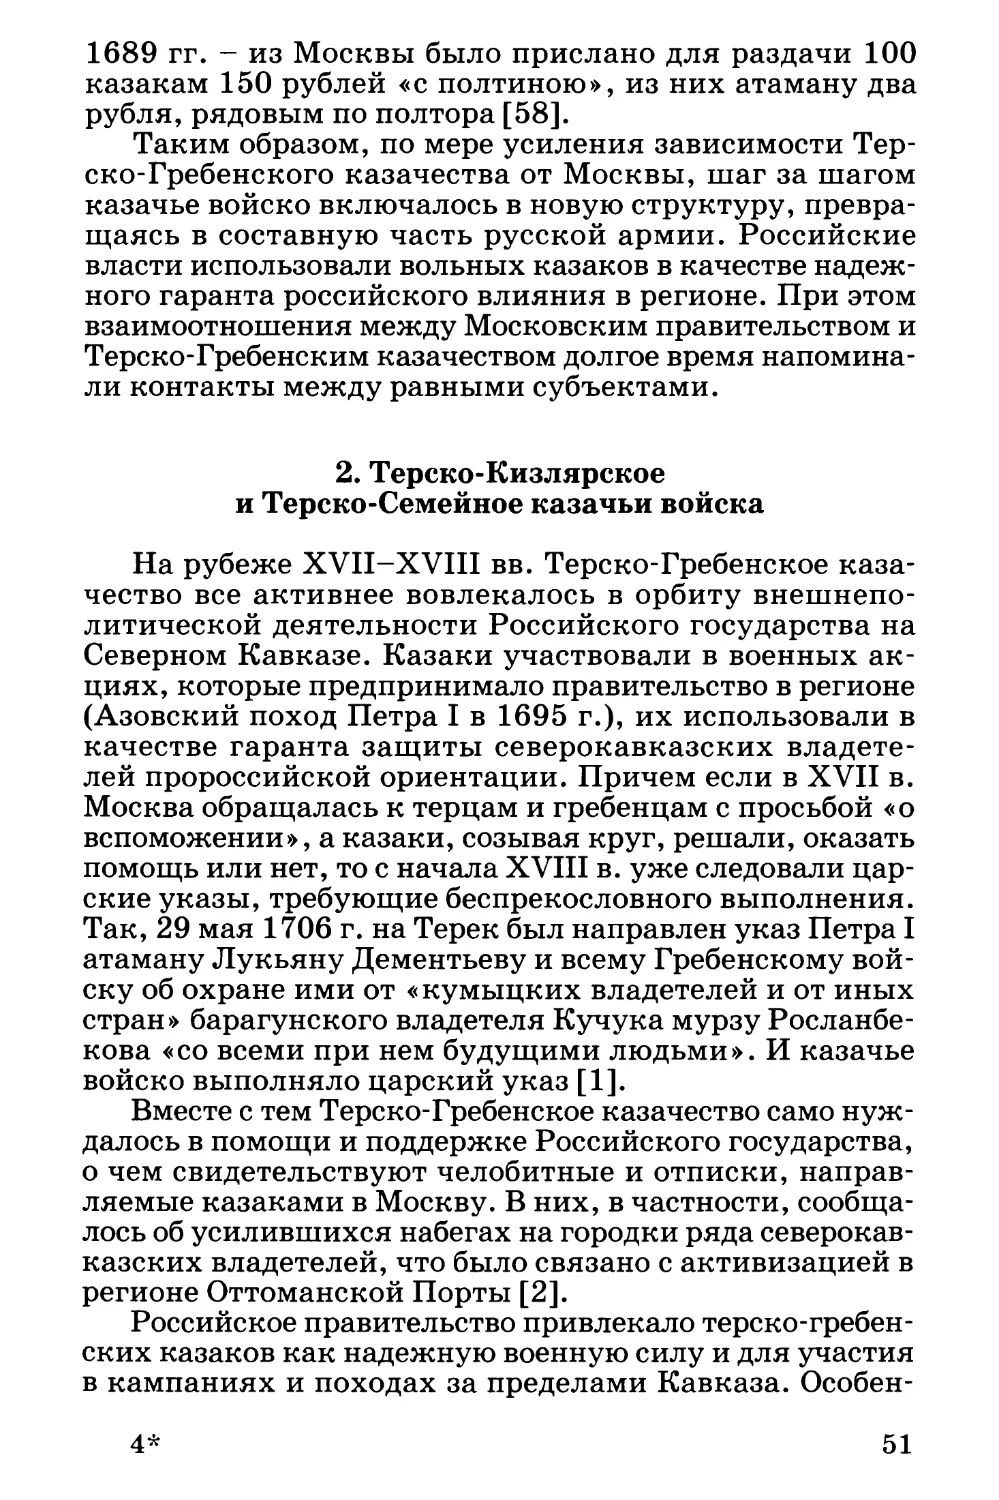 2. Терско-Кизлярское и Терско-Семейное казачьи войска